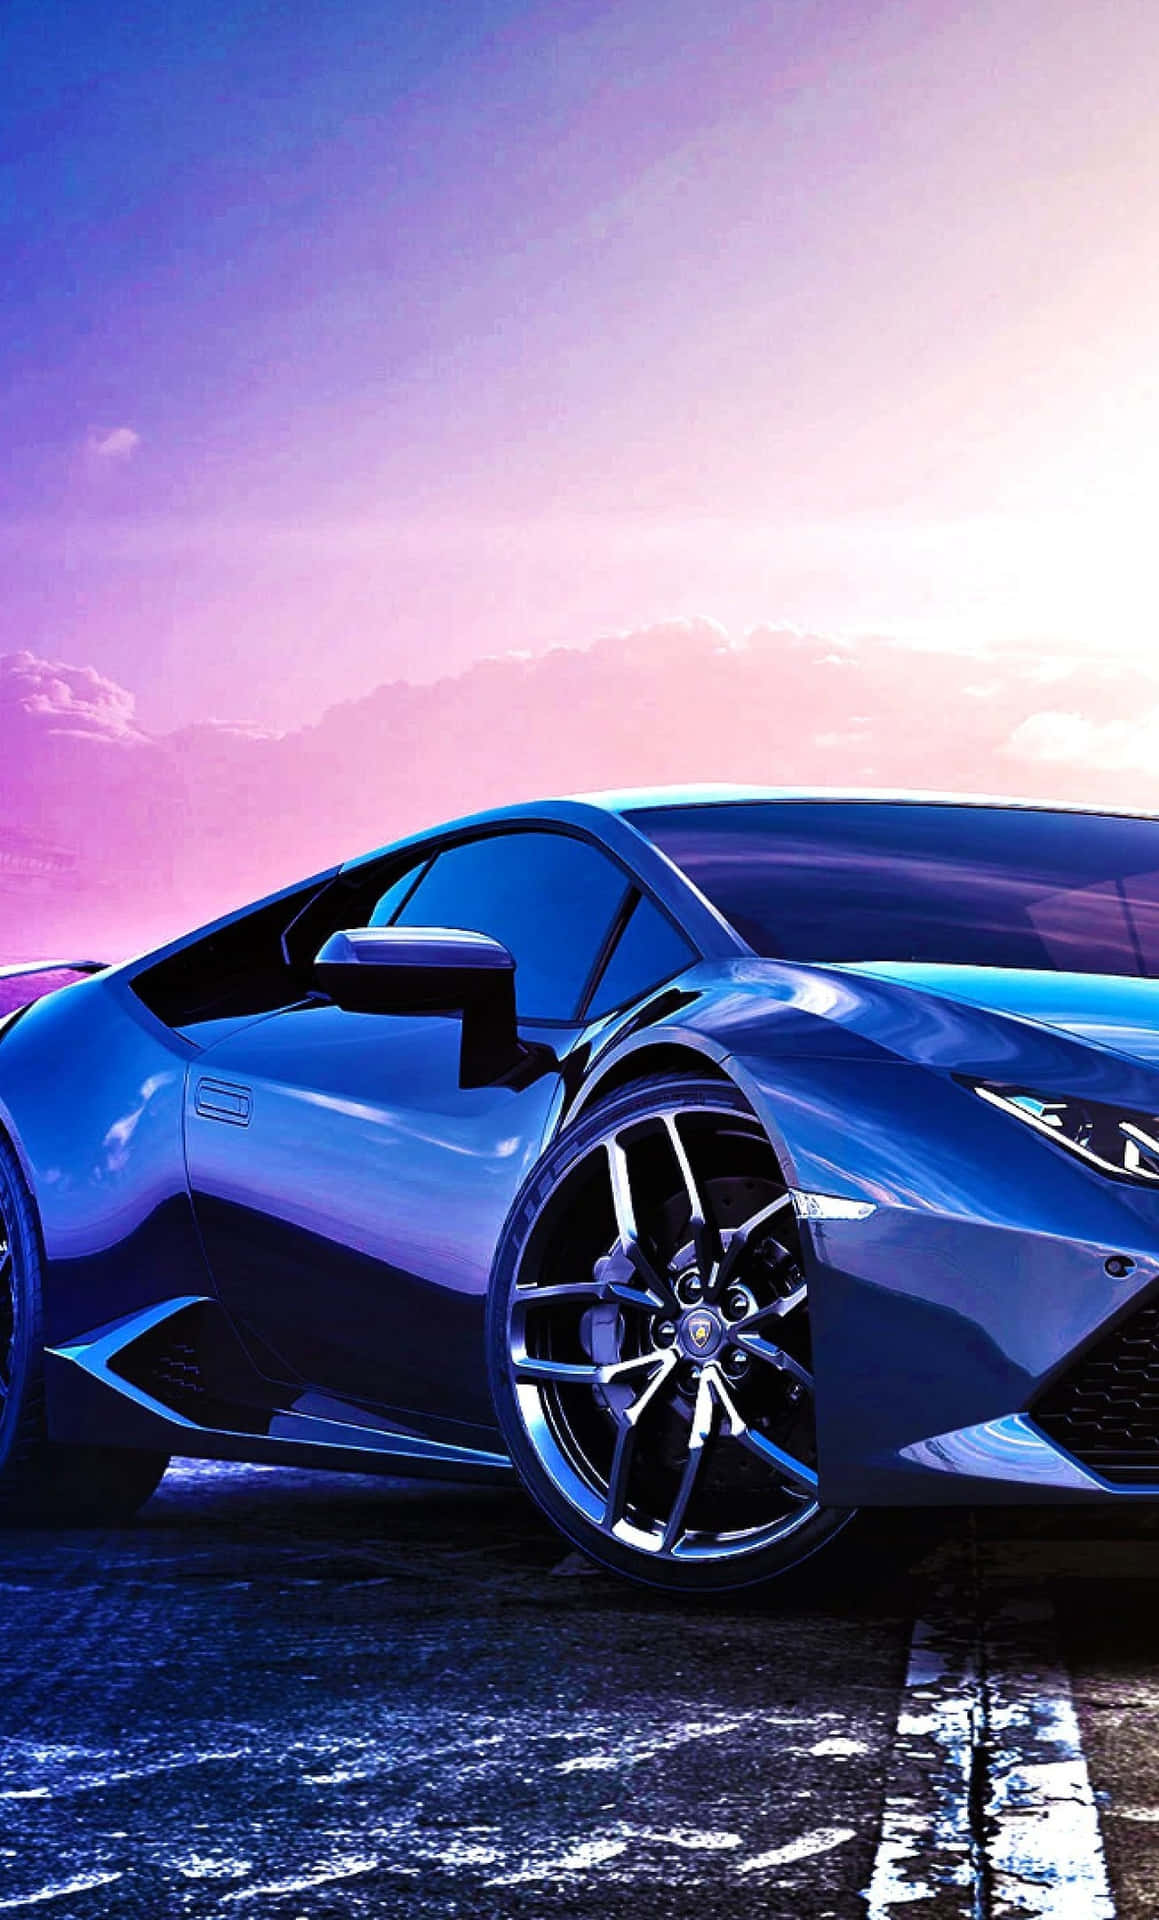 Zoomain På Den Vackra Blåa Lamborghinin. Wallpaper